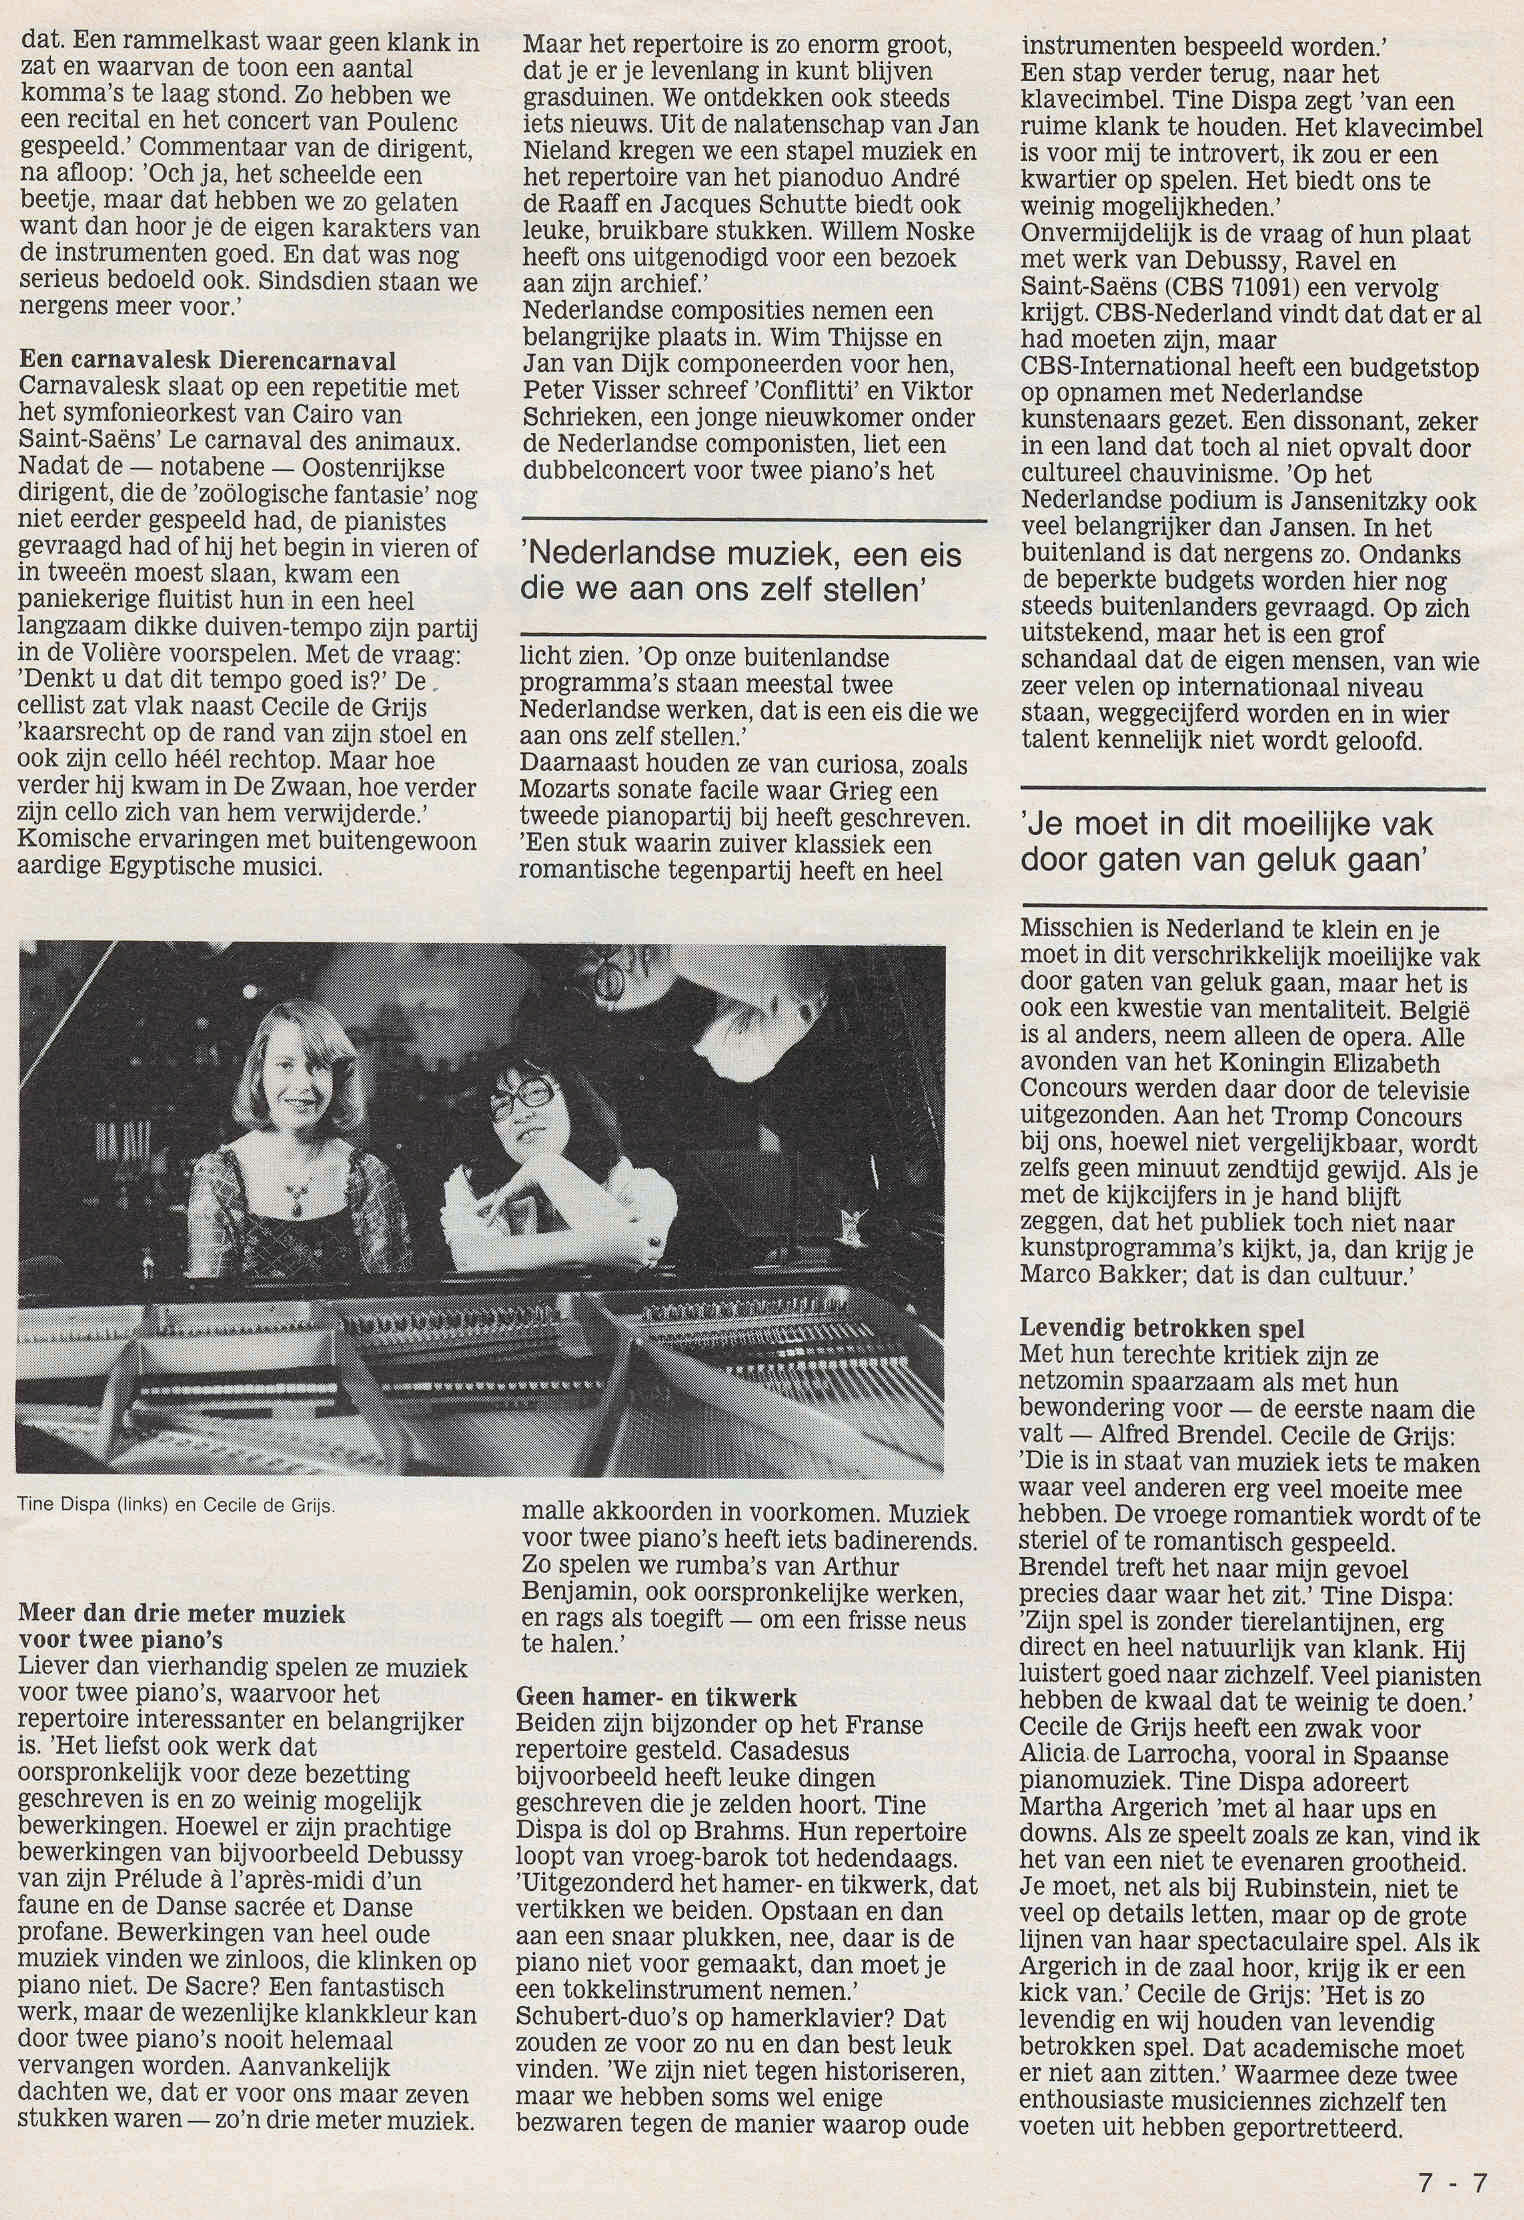 interview in tijdschrift Luister, juli 1984